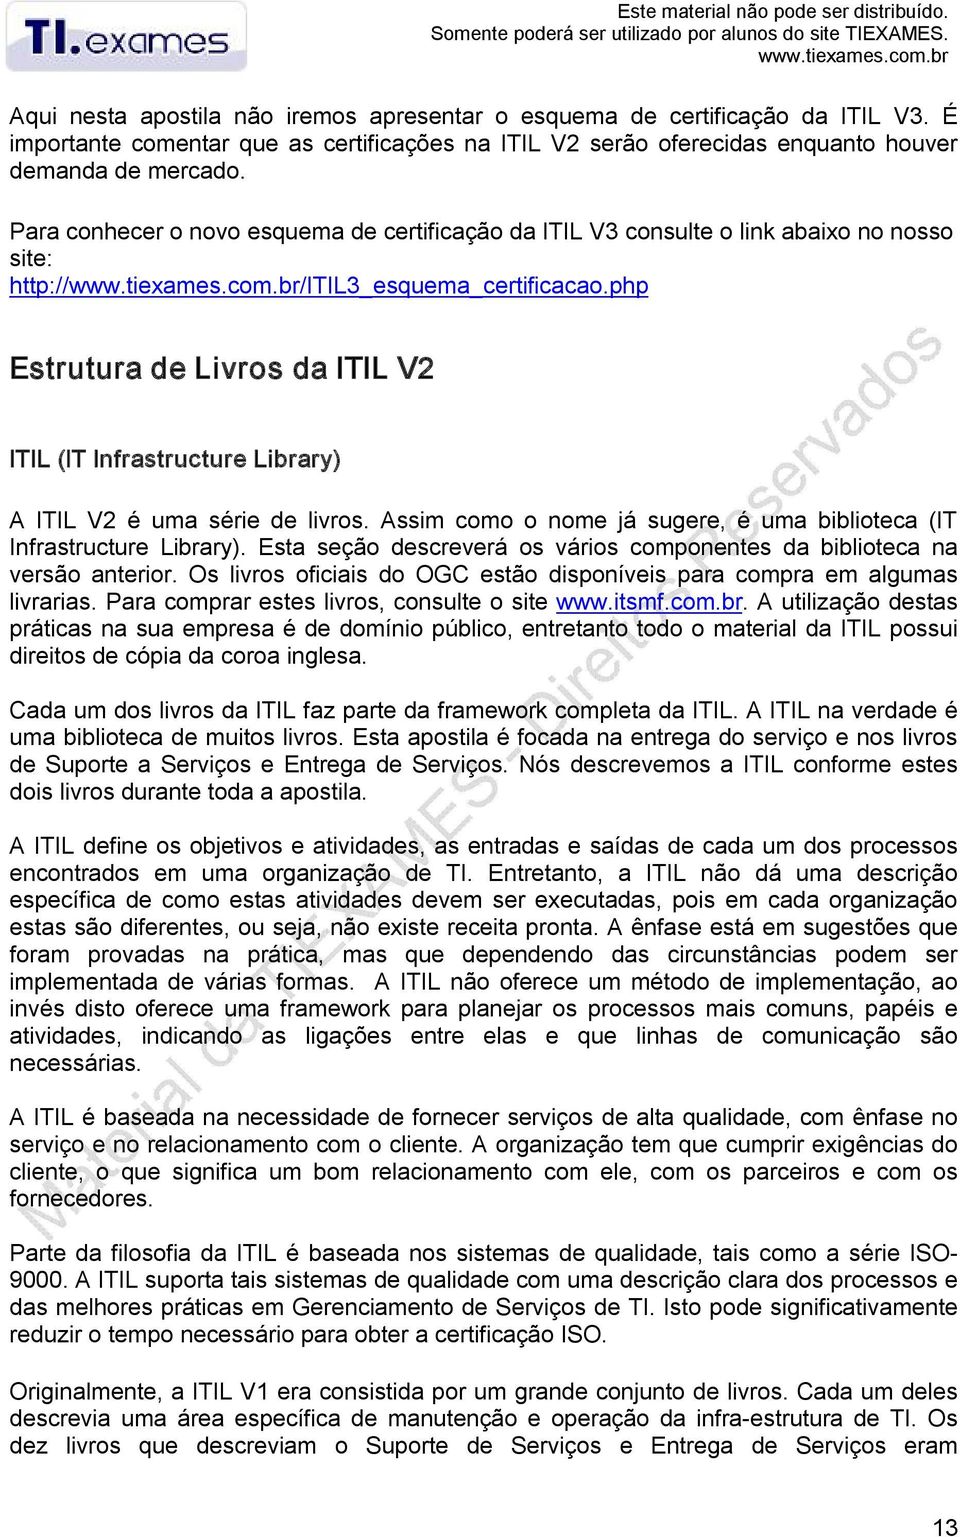 Para conhecer o novo esquema de certificação da ITIL V3 consulte o link abaixo no nosso site: http://www.tiexames.com.br/itil3_esquema_certificacao.